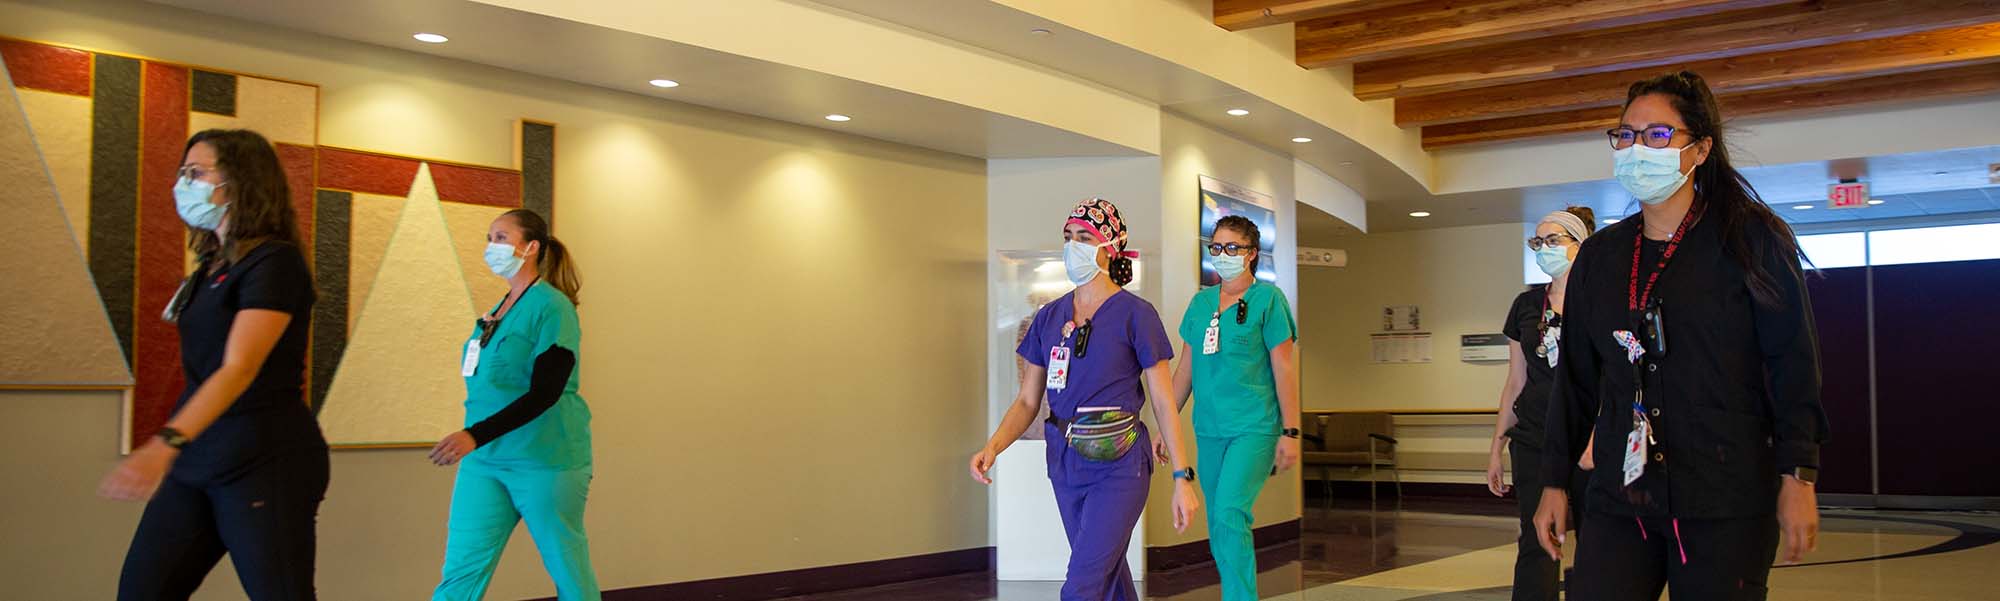 廊下を歩いているUNMの看護師